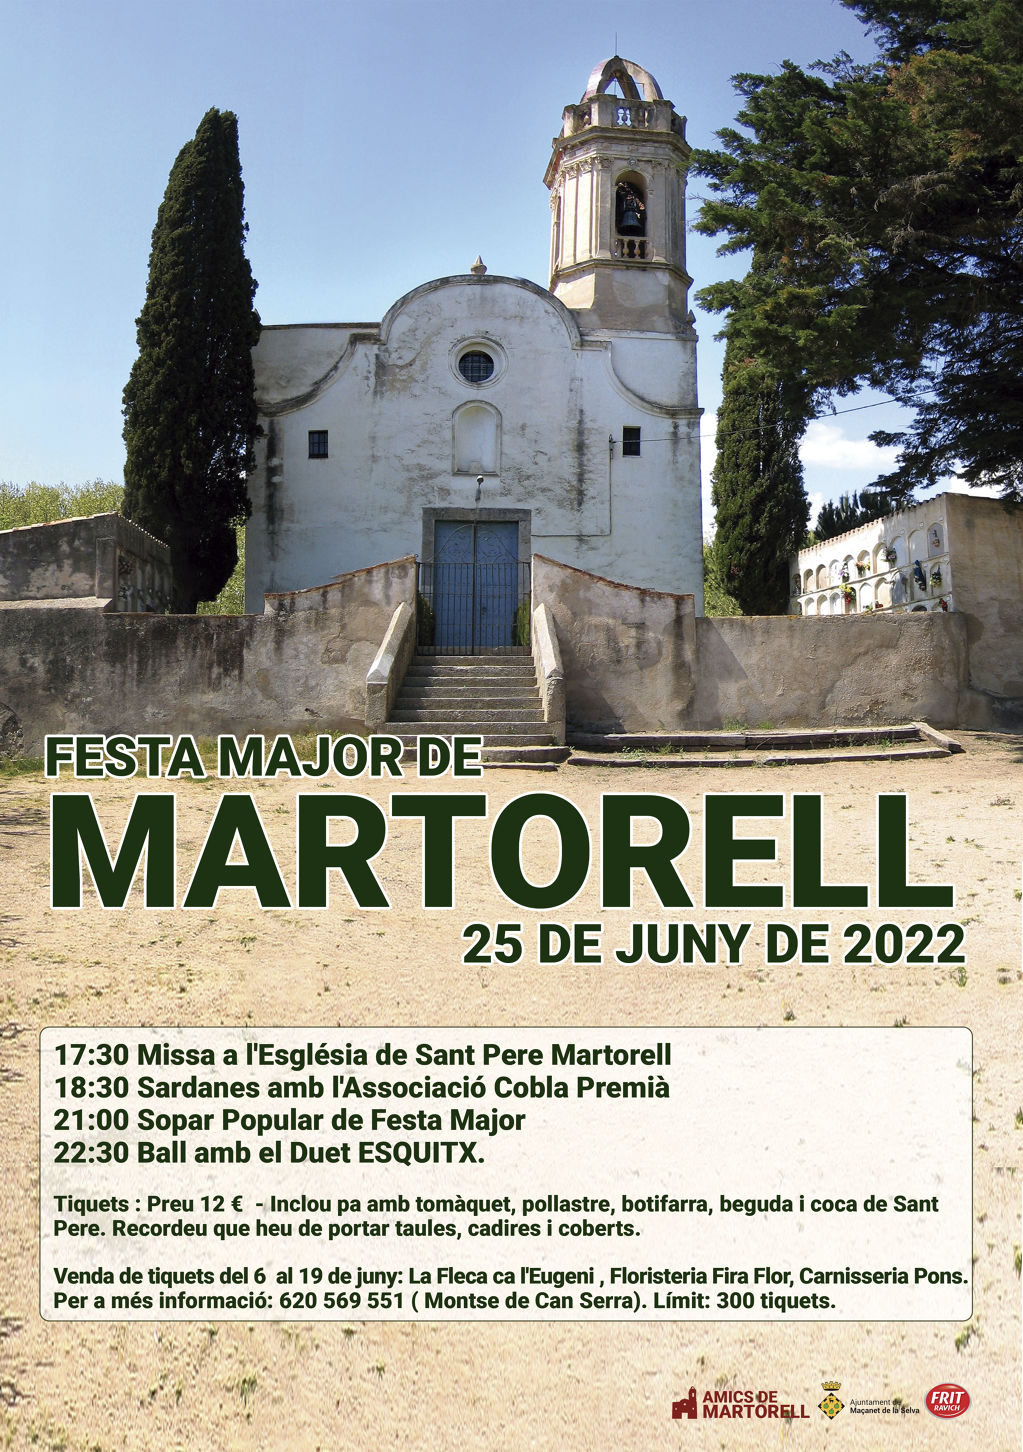 Festa major de Martorell - 89d77-FM-MARTORELL.jpg